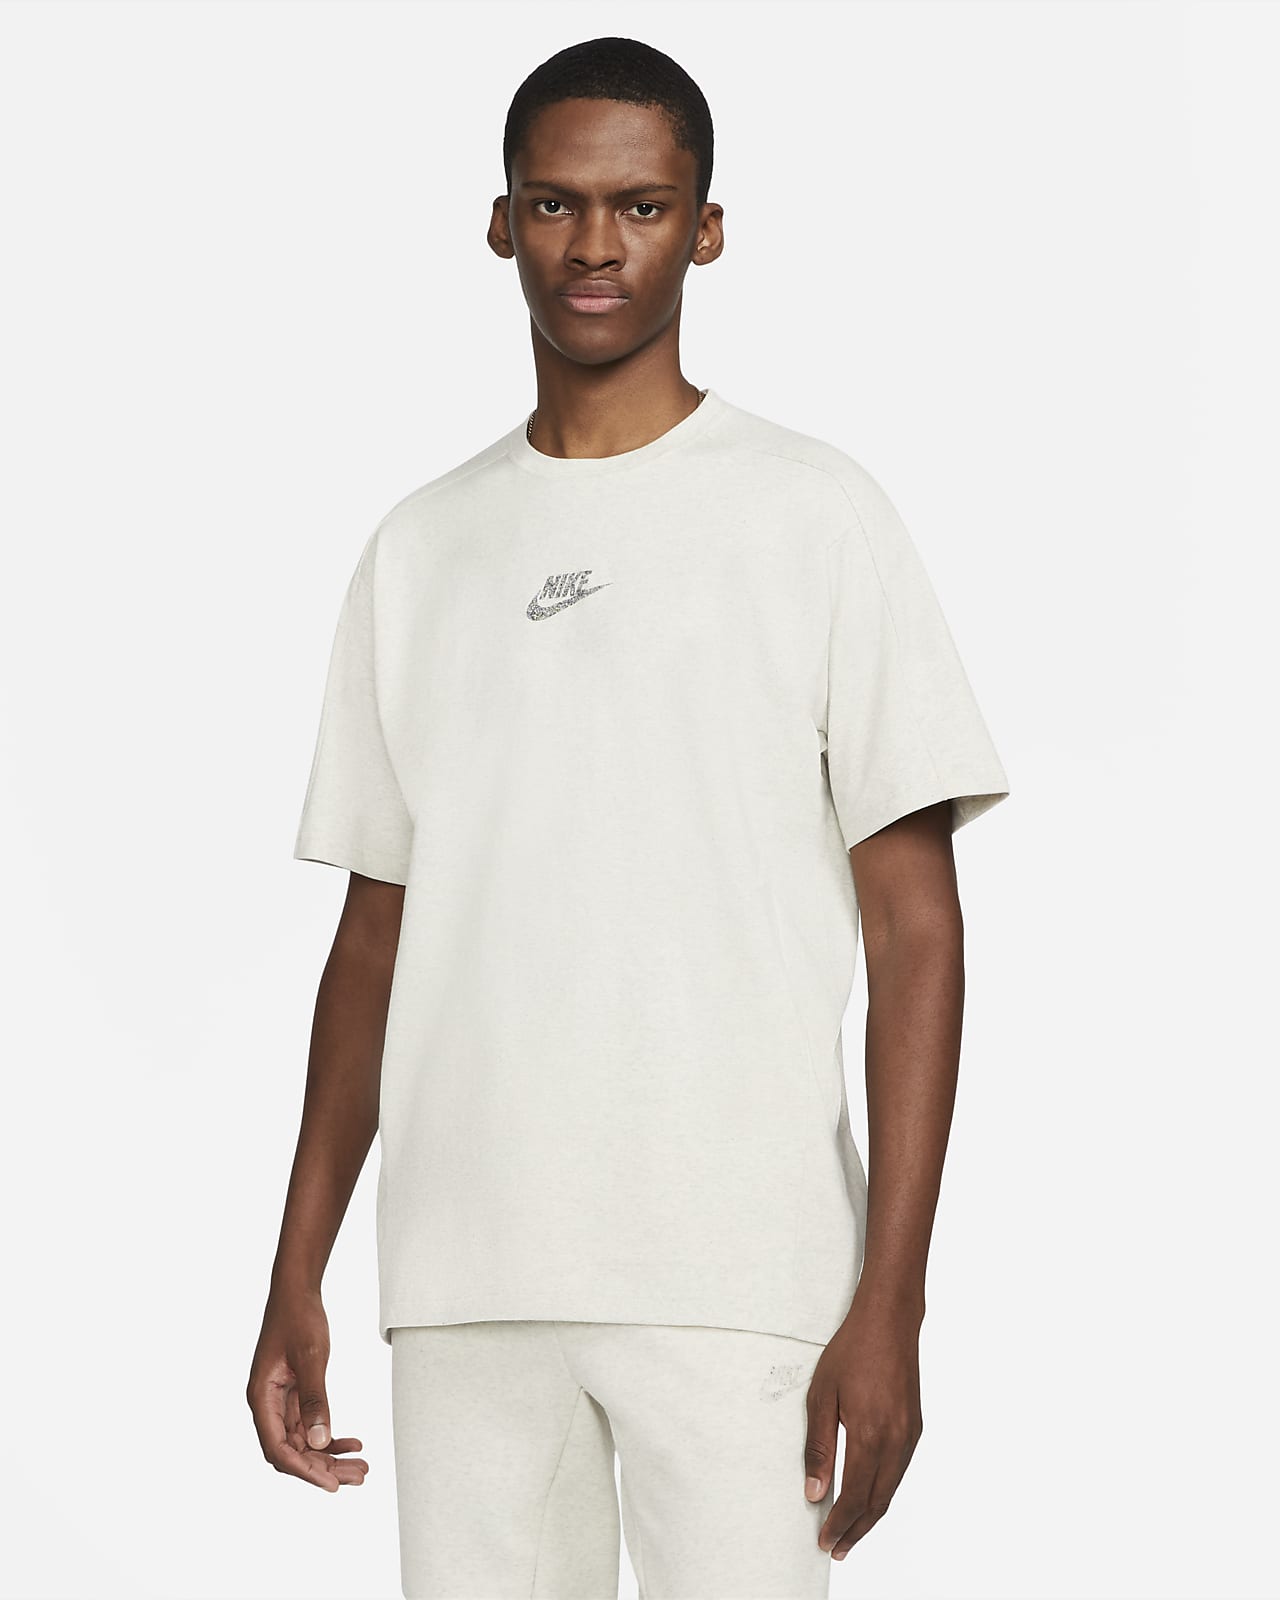 Nike Sportswear Men's Short-Sleeve Top 